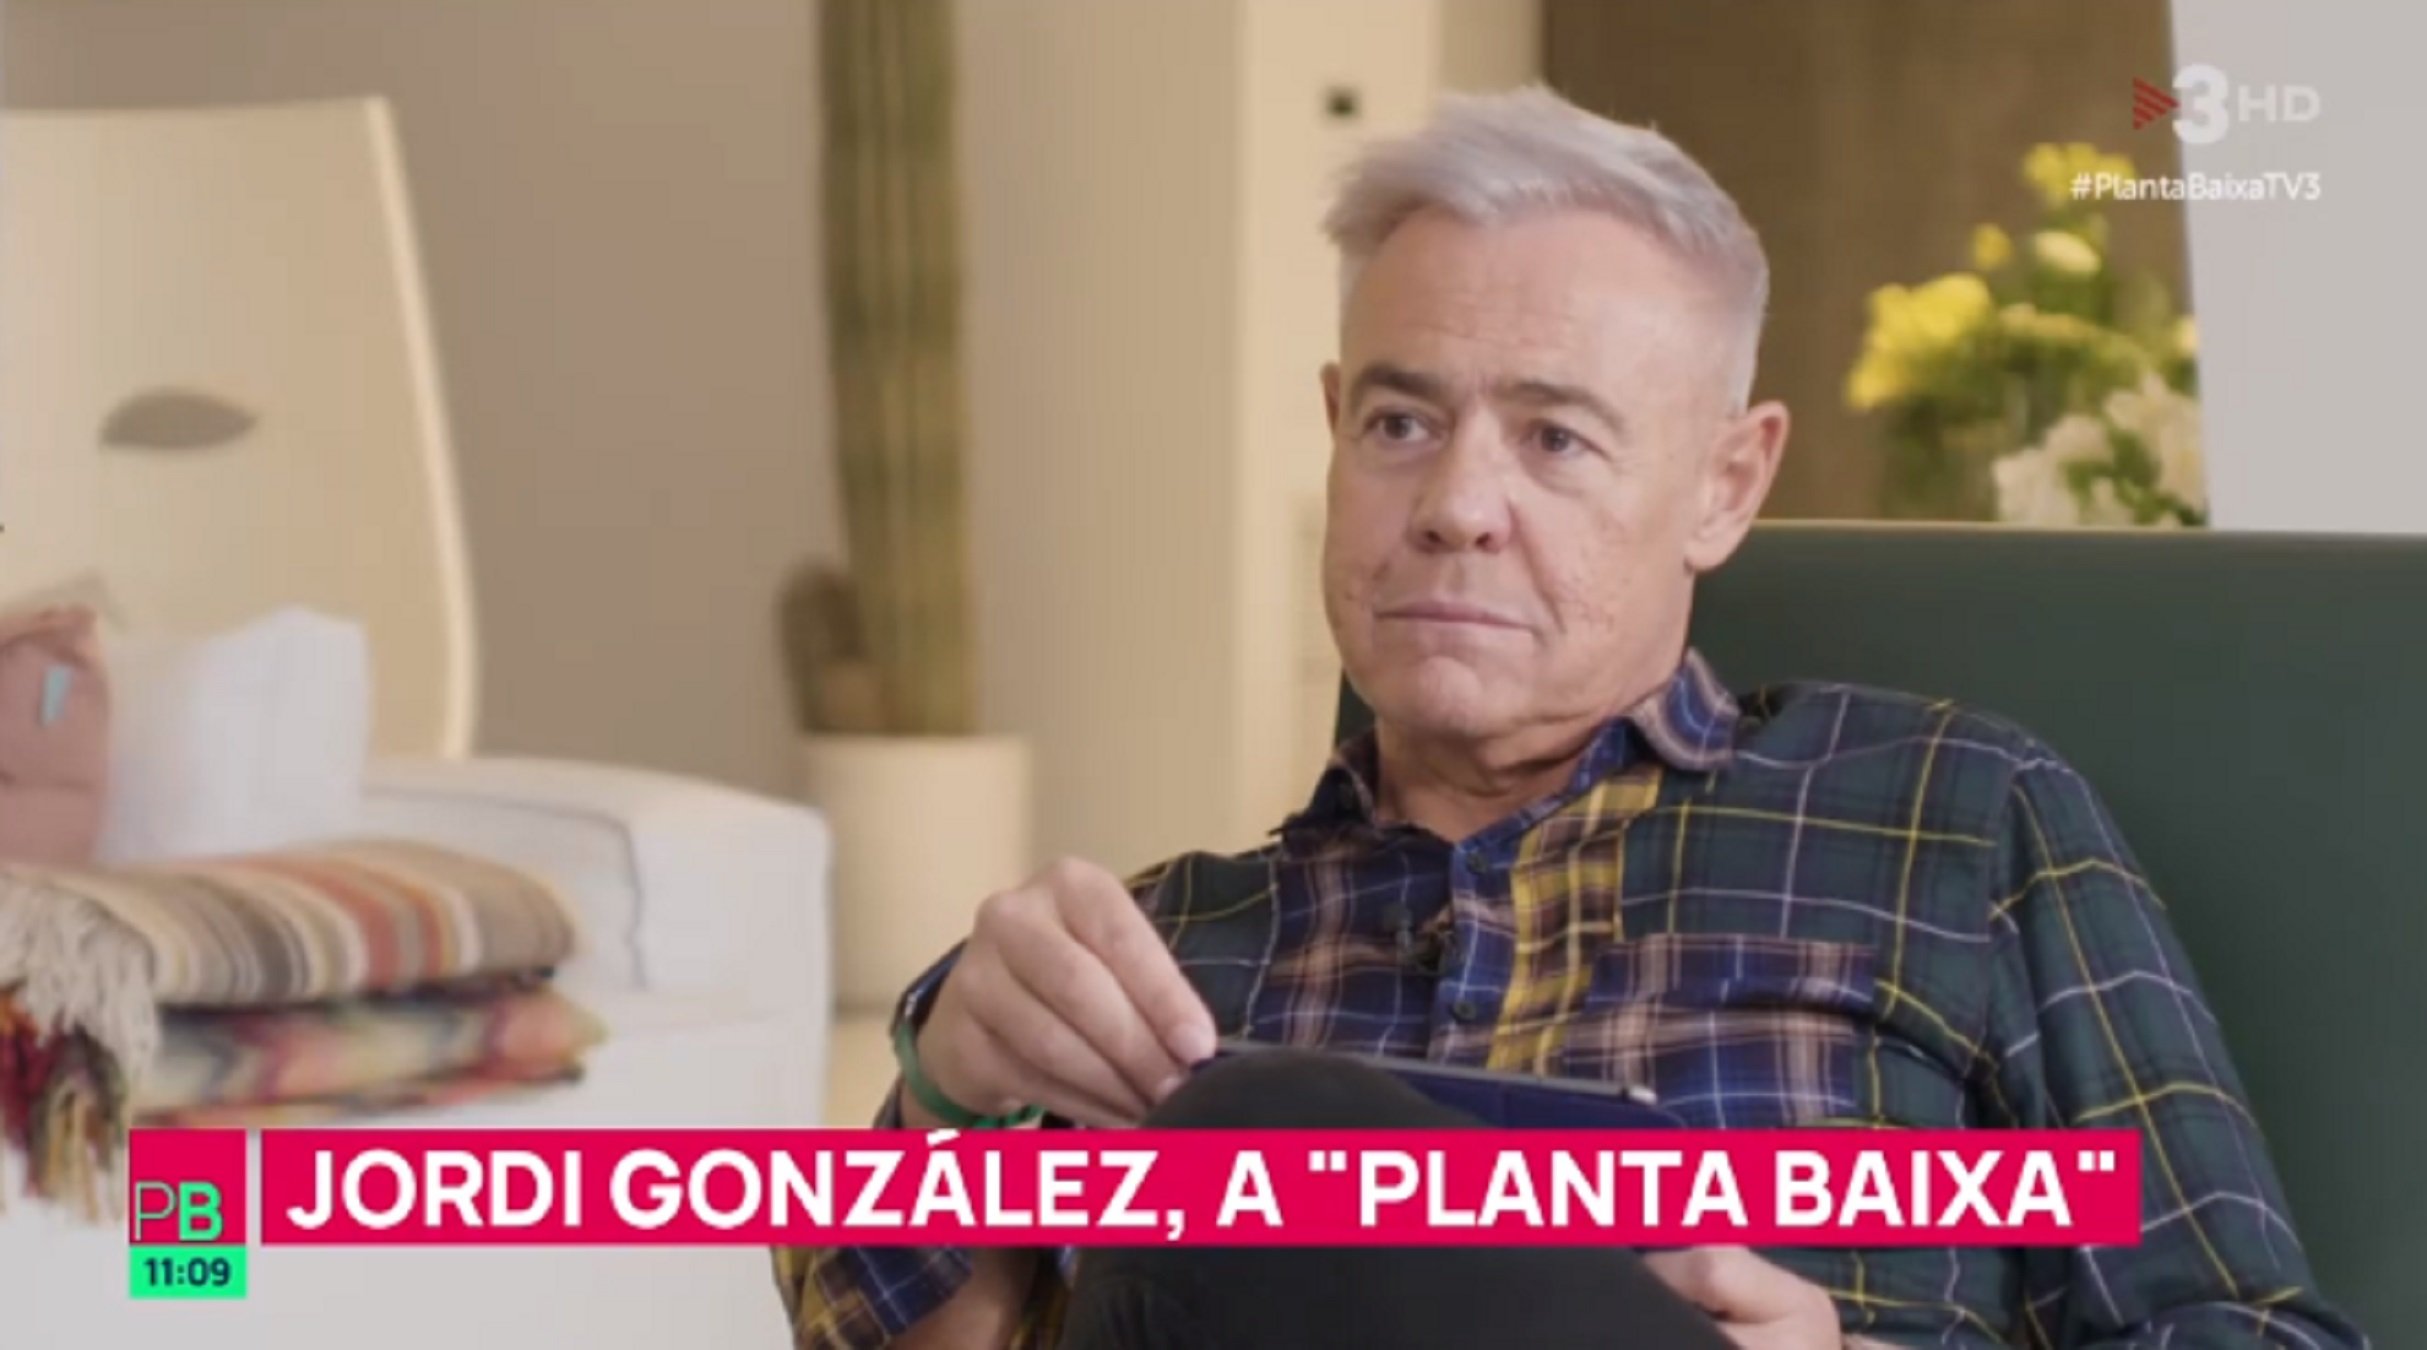 Jordi González sorprèn i revela a TV3 quan i com morirà: "Ho tinc claríssim"